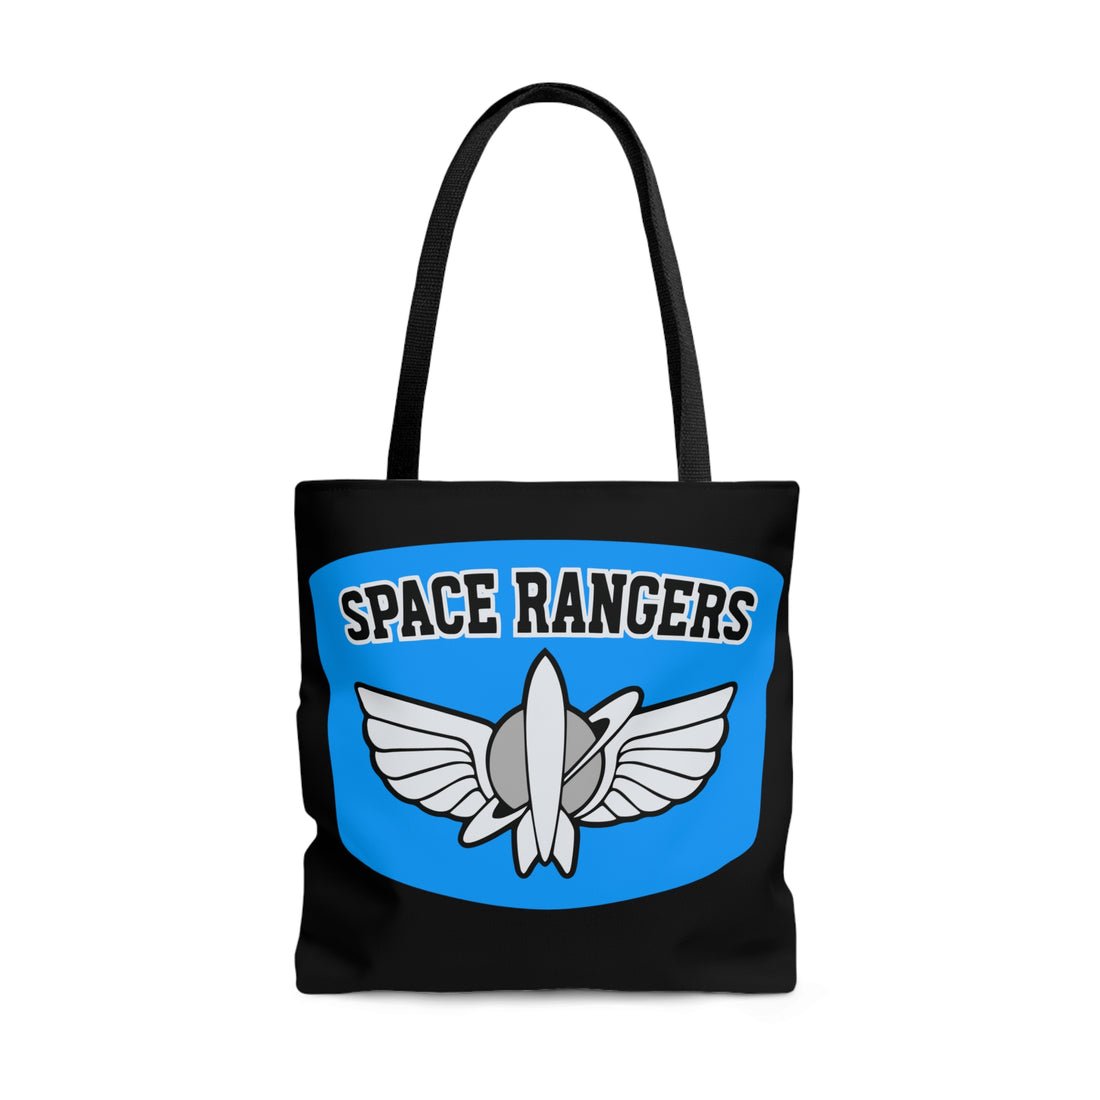 Space Rangers Tote Bag Original